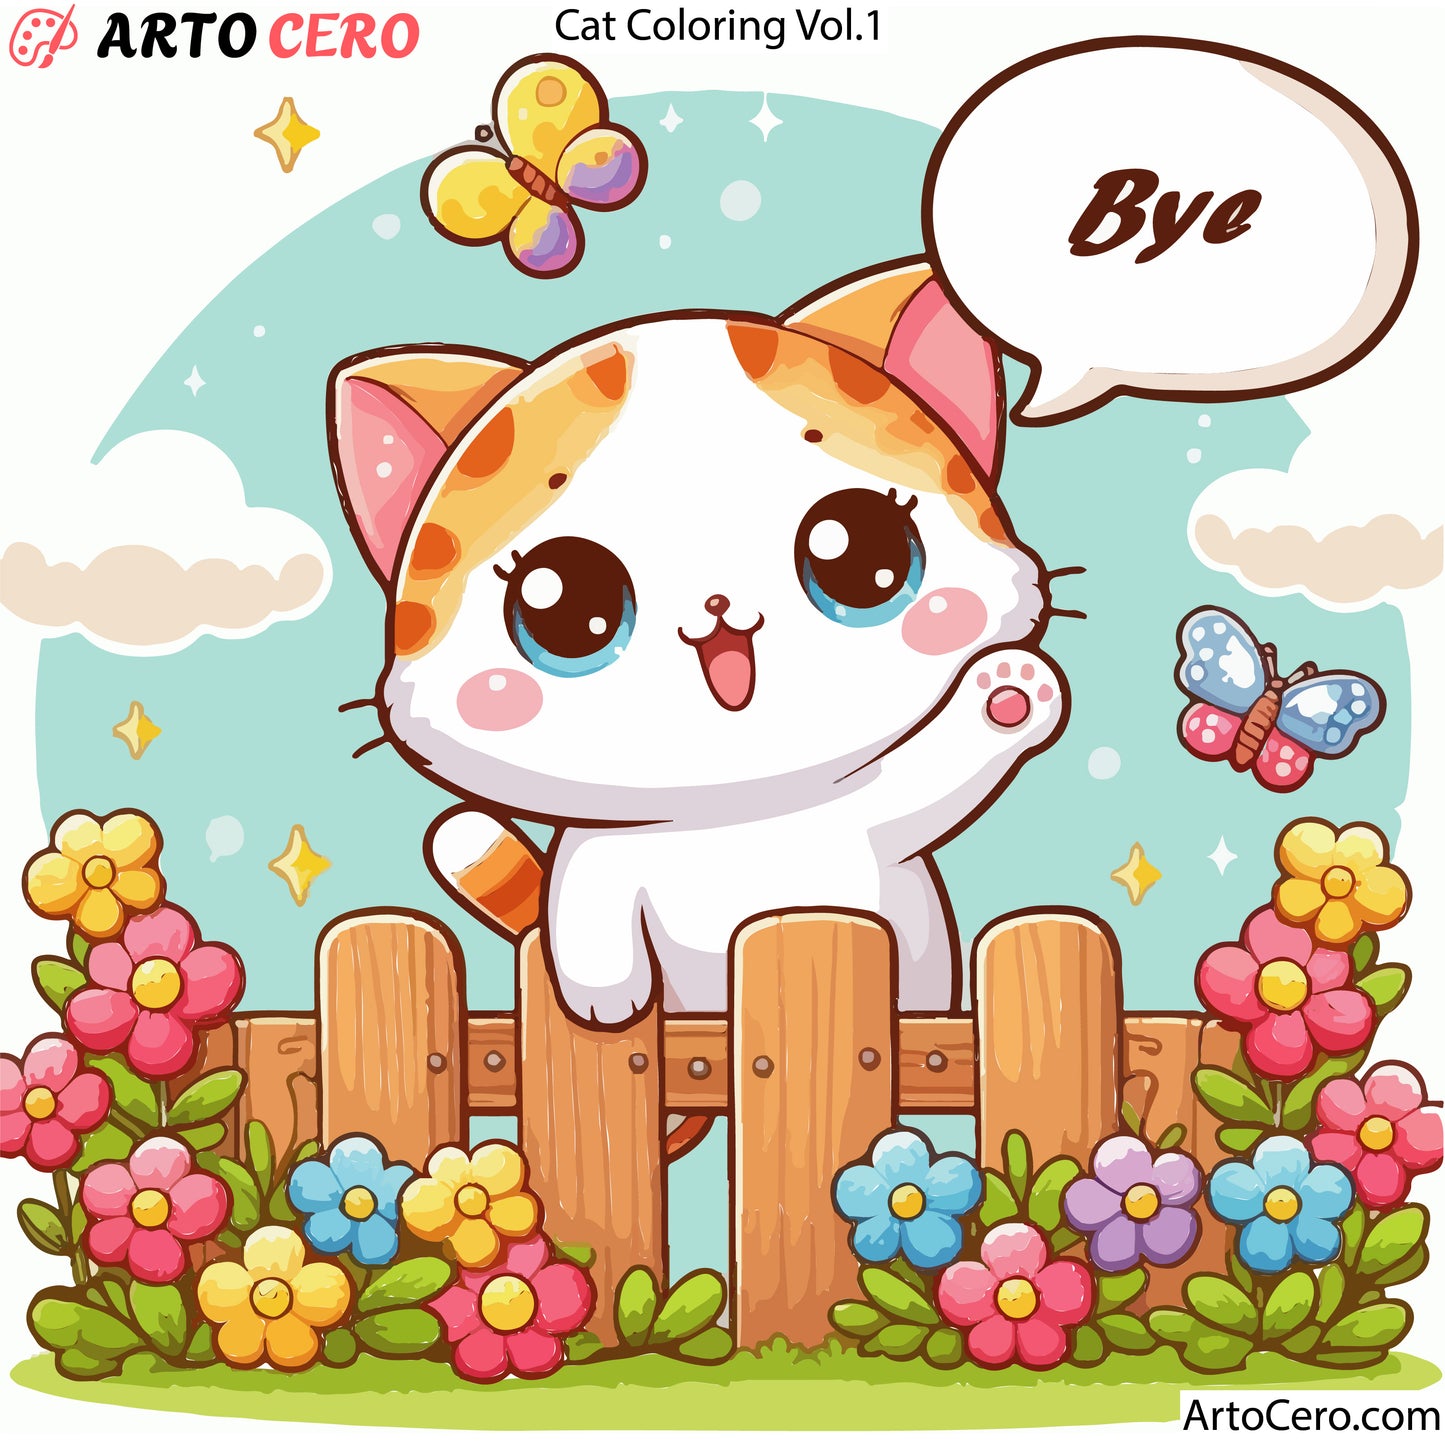 Cat Coloring Digital Book Vol.1 - ArtoCero